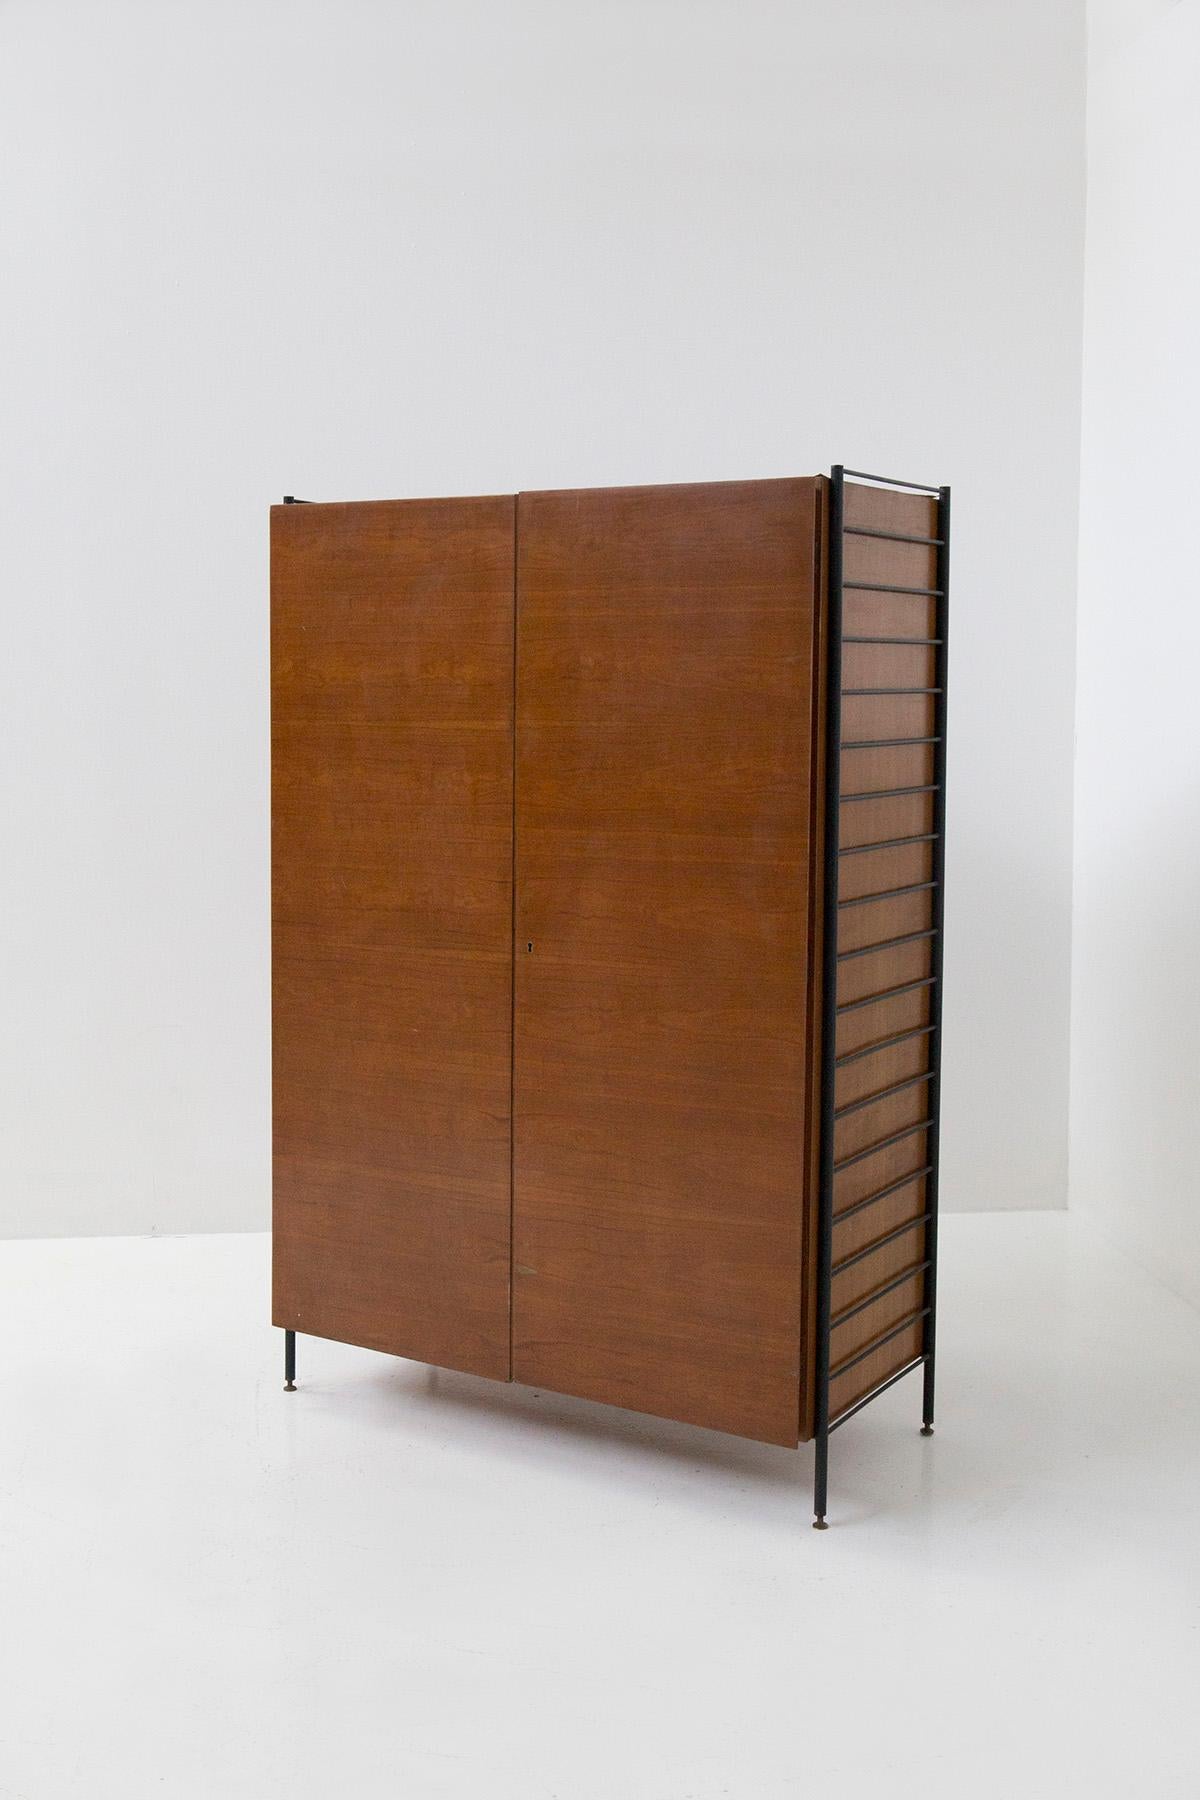 Petite armoire de chambre italienne en bois et en fer des années 1950. La petite armoire est en bois et comporte deux portes à charnières. Sur les côtés de l'armoire se trouvent deux échelles en fer ancrées à celle-ci, qui servent à la fois de